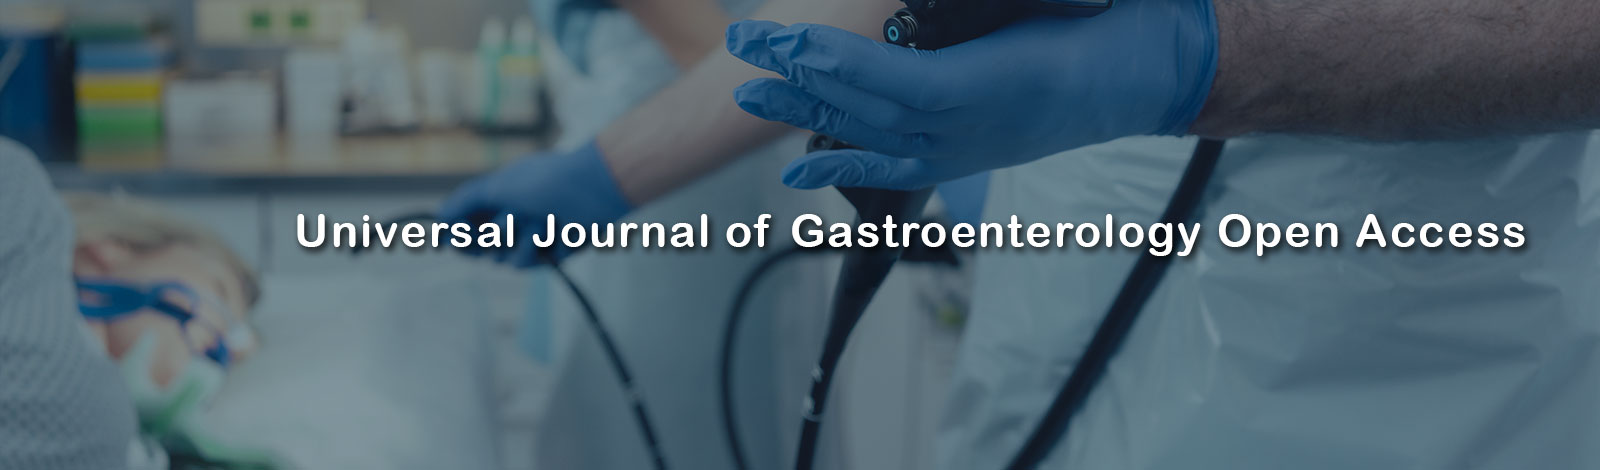 Universal Journal of Gastroenterology Open Access 